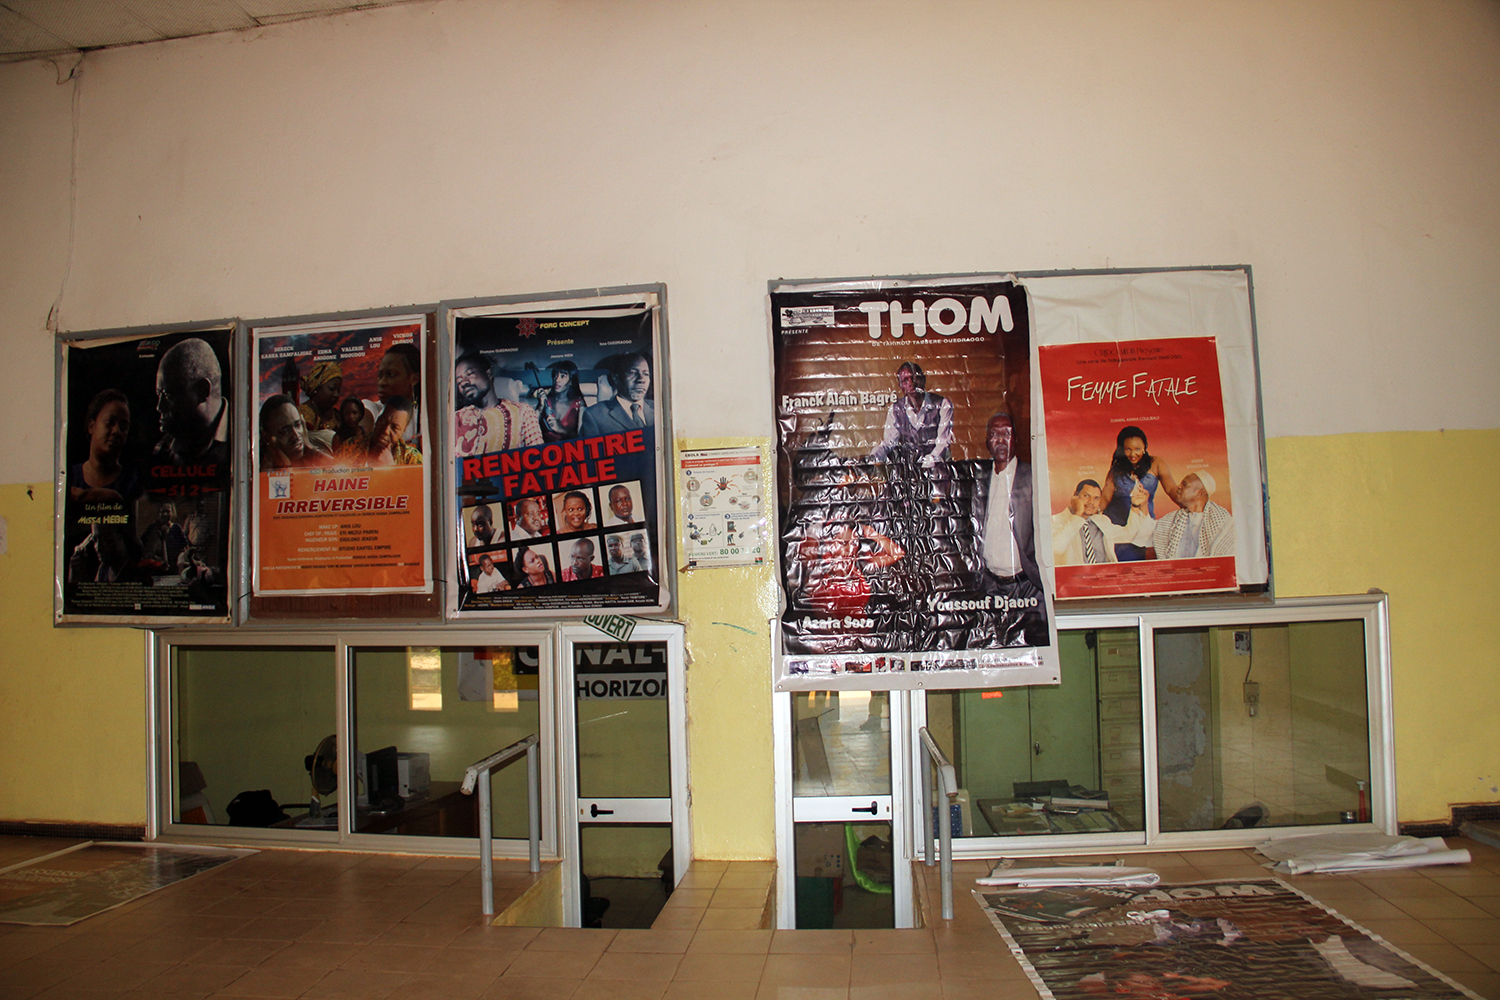 Les films à l’affiche lors de la visite de l’envoyée spéciale des globe-reporters. Les films burkinabés sont en haut de l’affiche.